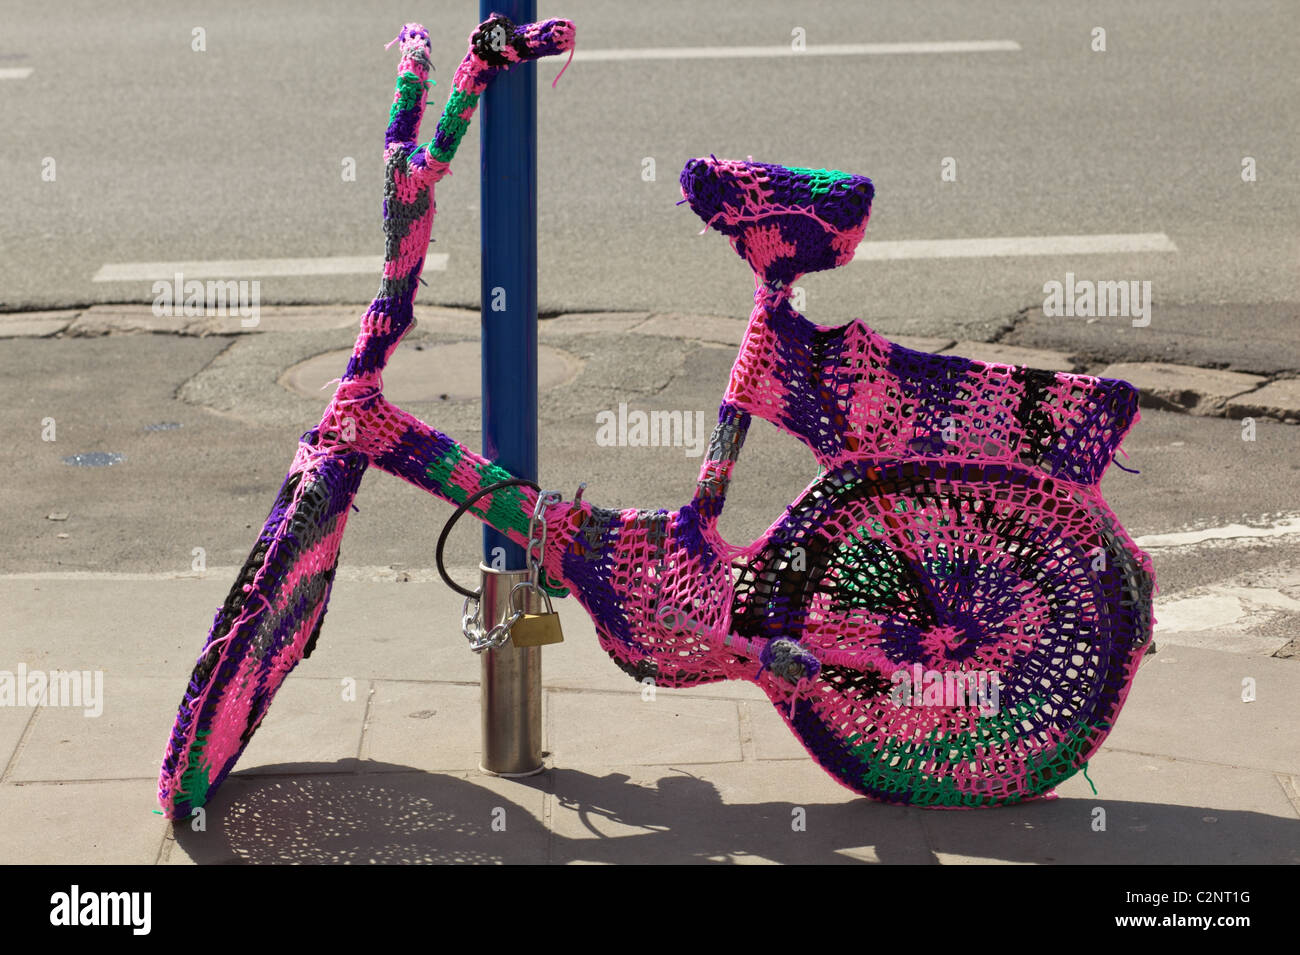 Lustige Fahrrad eingesperrt Stockfoto